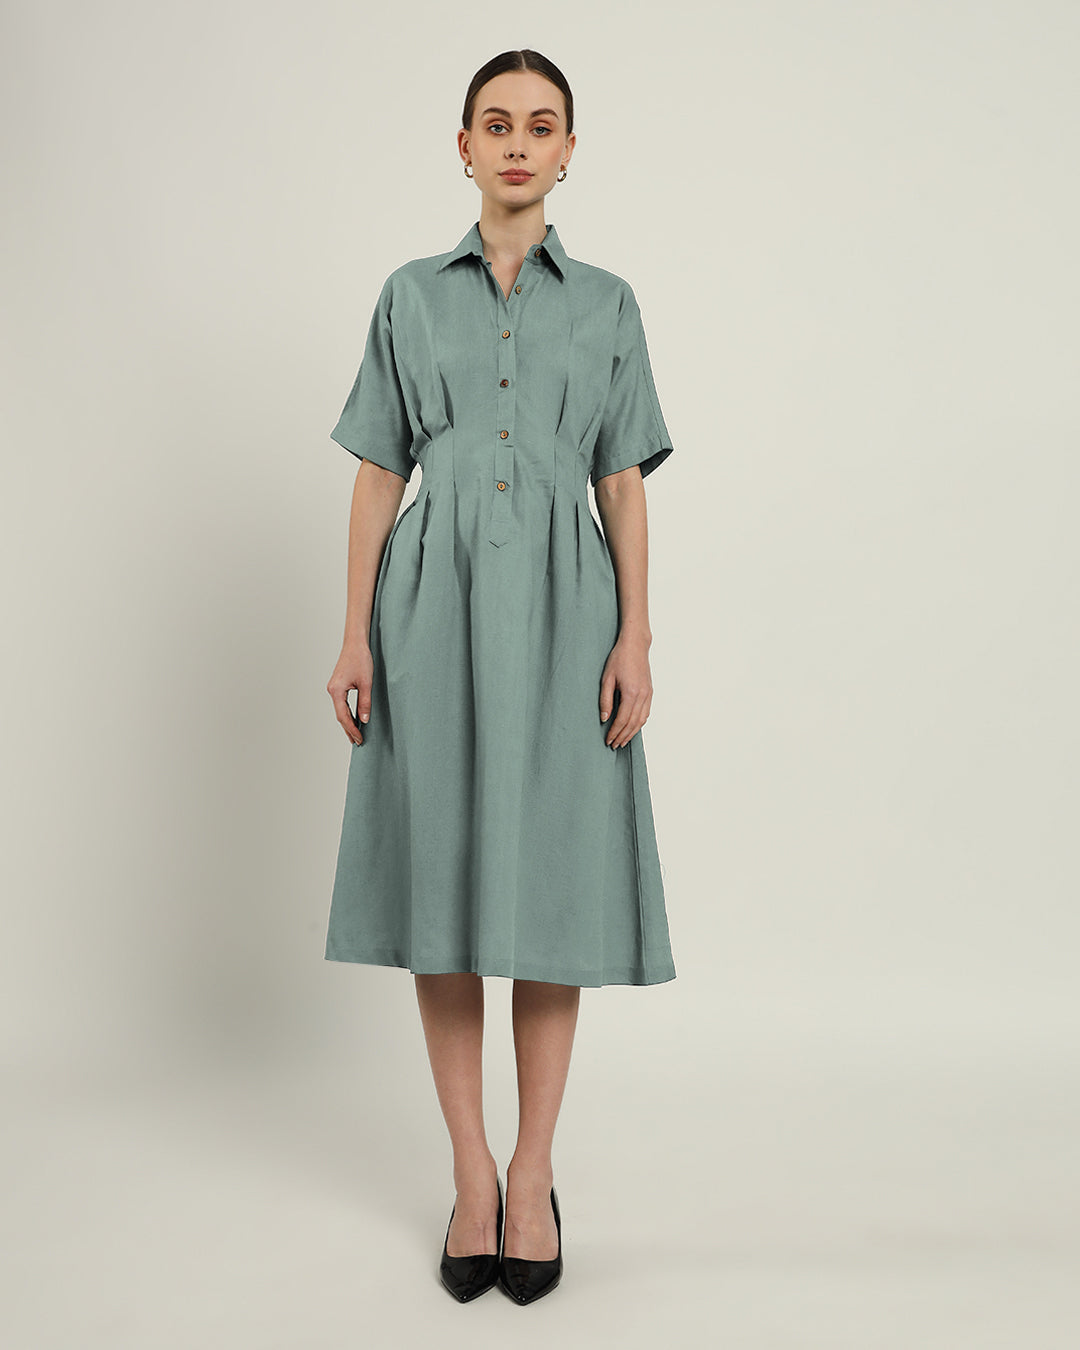 The Salford Daisy Carolina Linen Dress